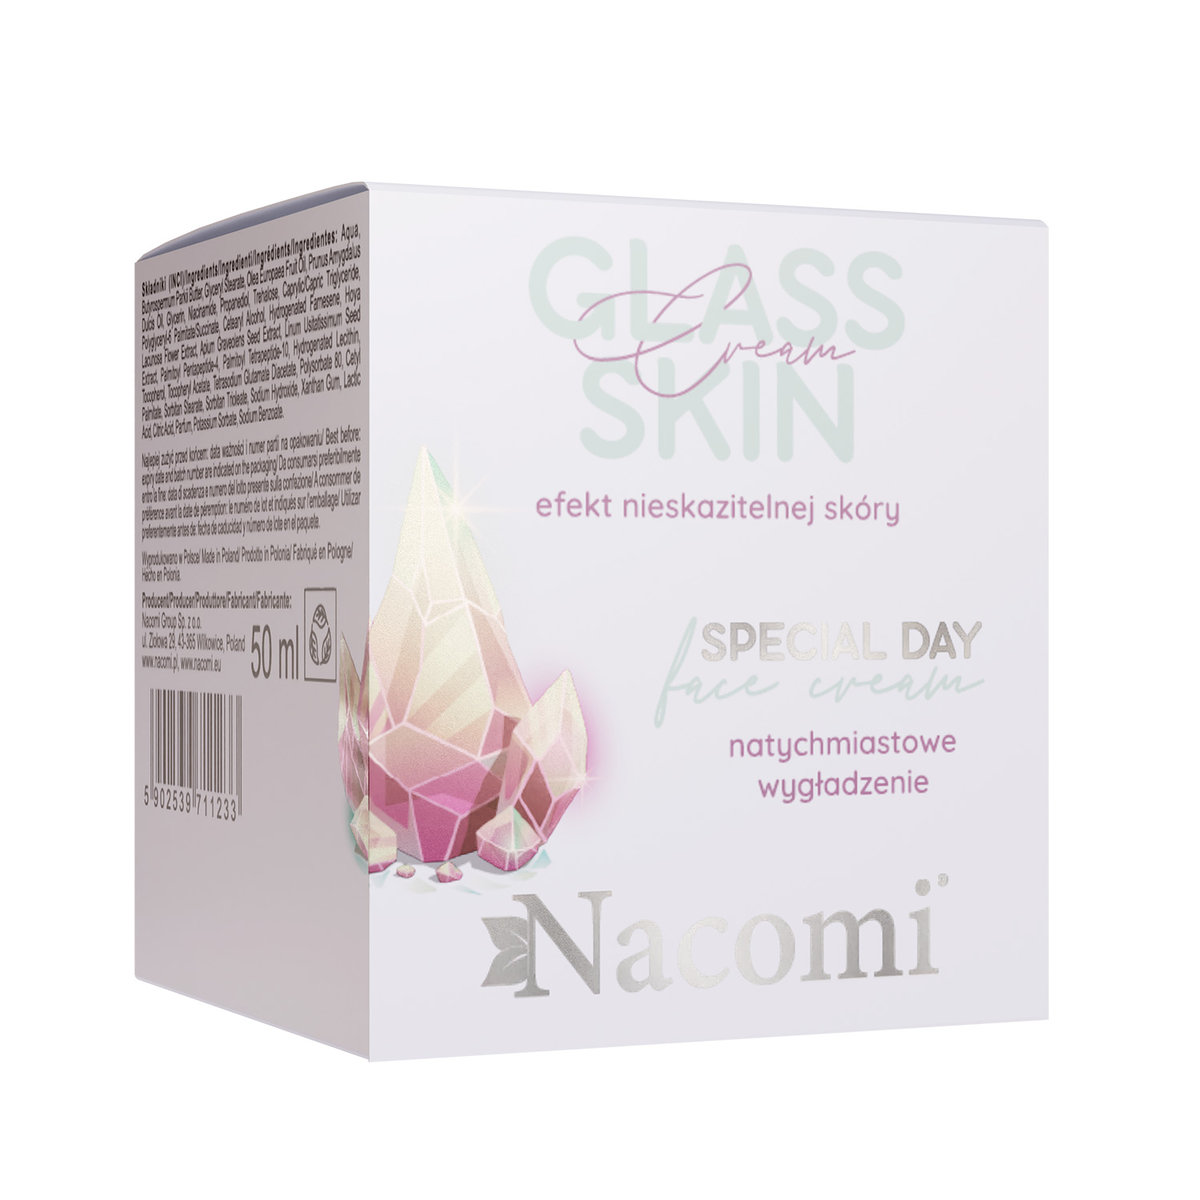 Nacomi Glass Skin Special Day, krem do twarzy, 50ml